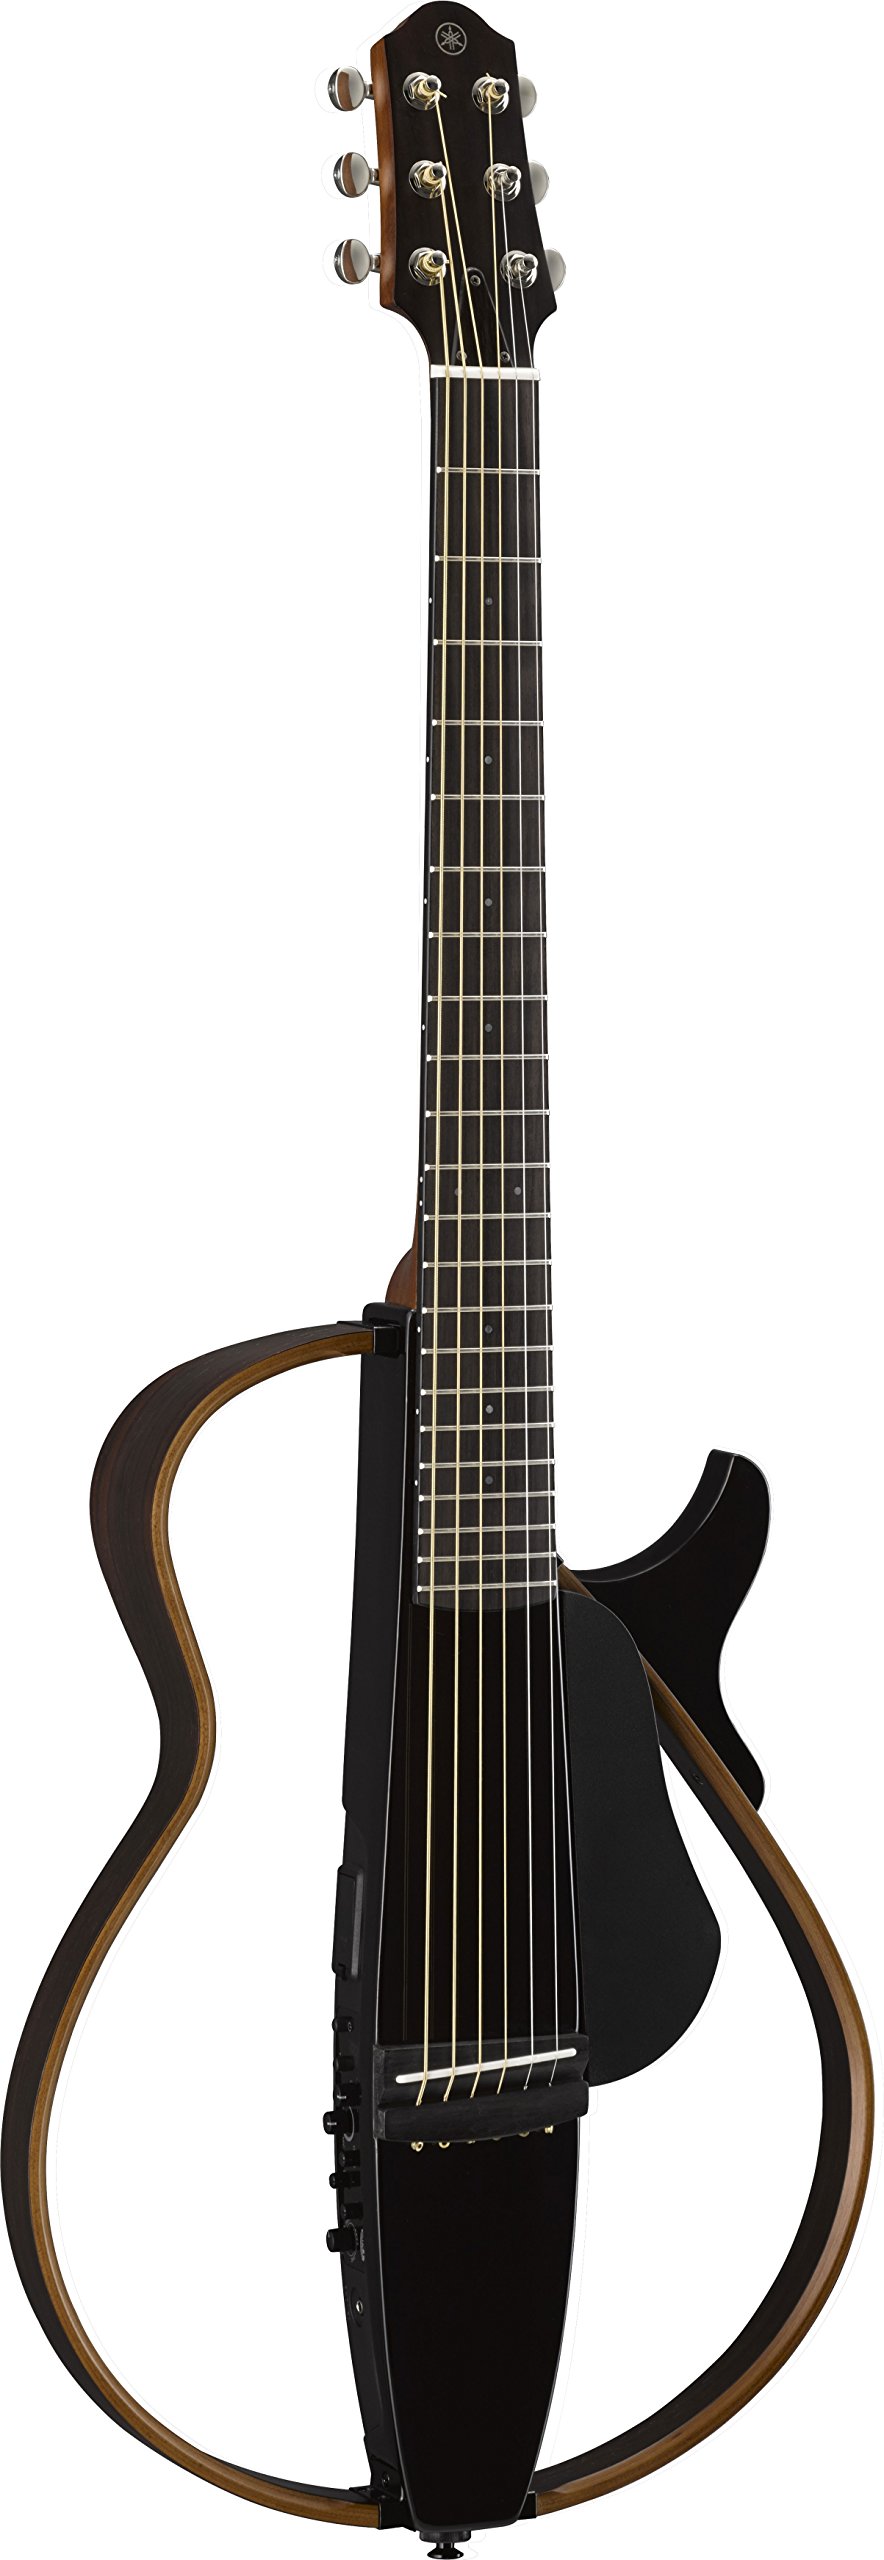 ヤマハ YAMAHA ギター サイレントギター トランスルーセントブラック SLG200S TBL アコースティックサウンドを実現するSRTパワードピックアップシステム搭載 チューナー内蔵 専用ソフトケース付属